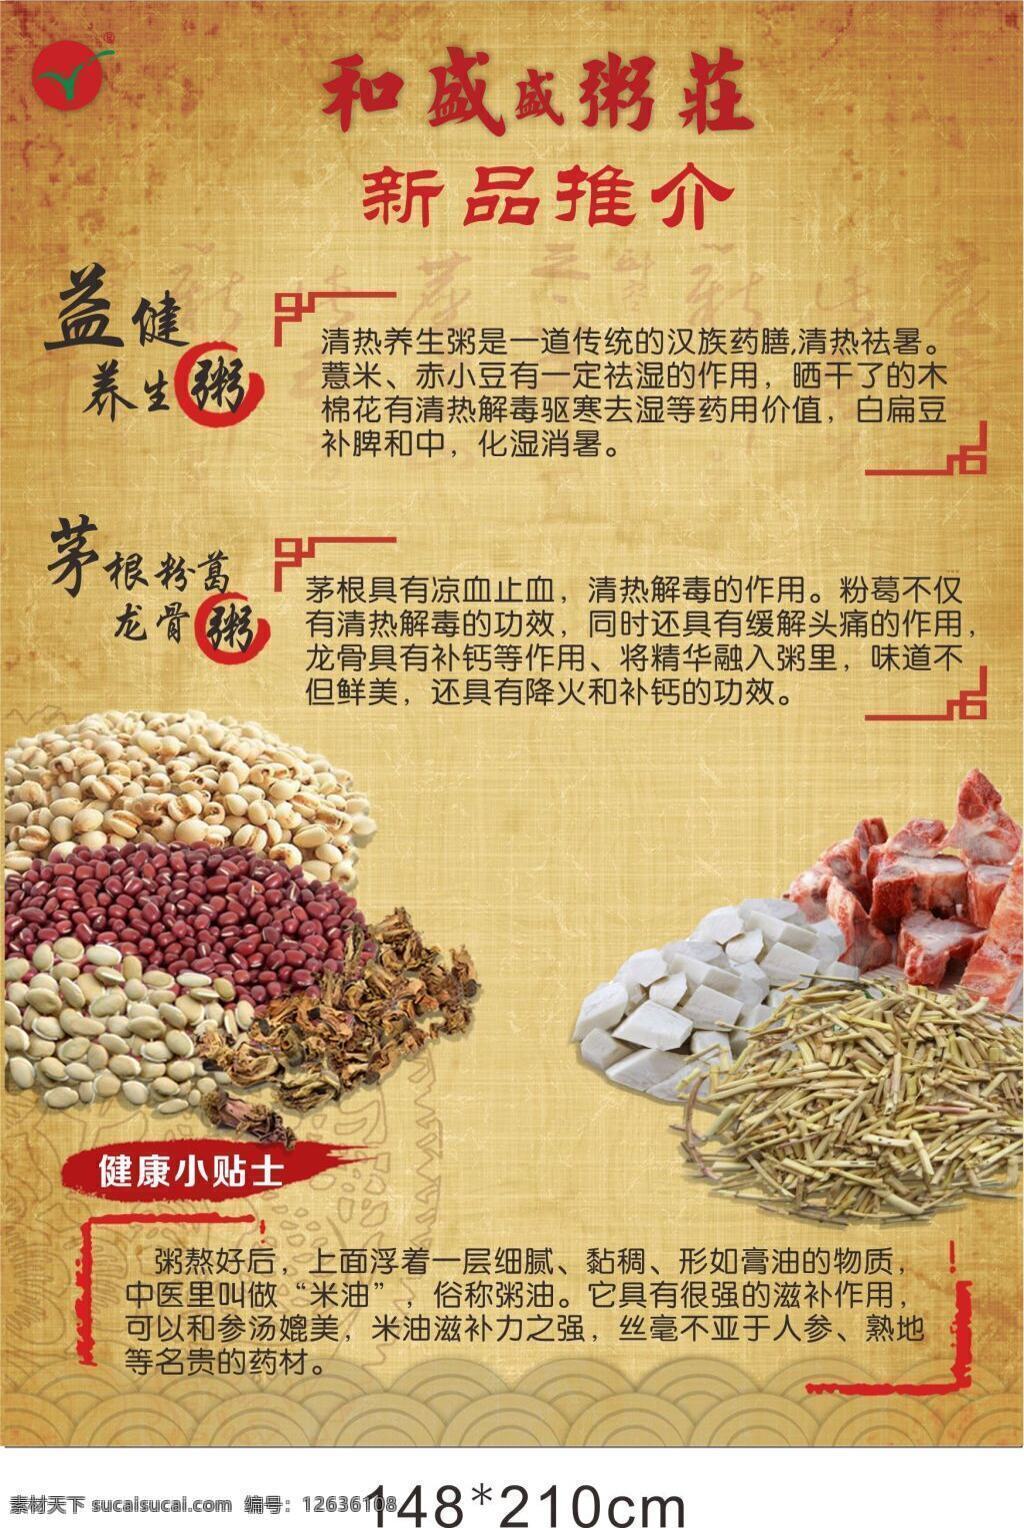 高端 中国 风 饮食 行业 宣传单 粥的介绍 赤小豆 薏米 木棉花 古典中国风 黄色